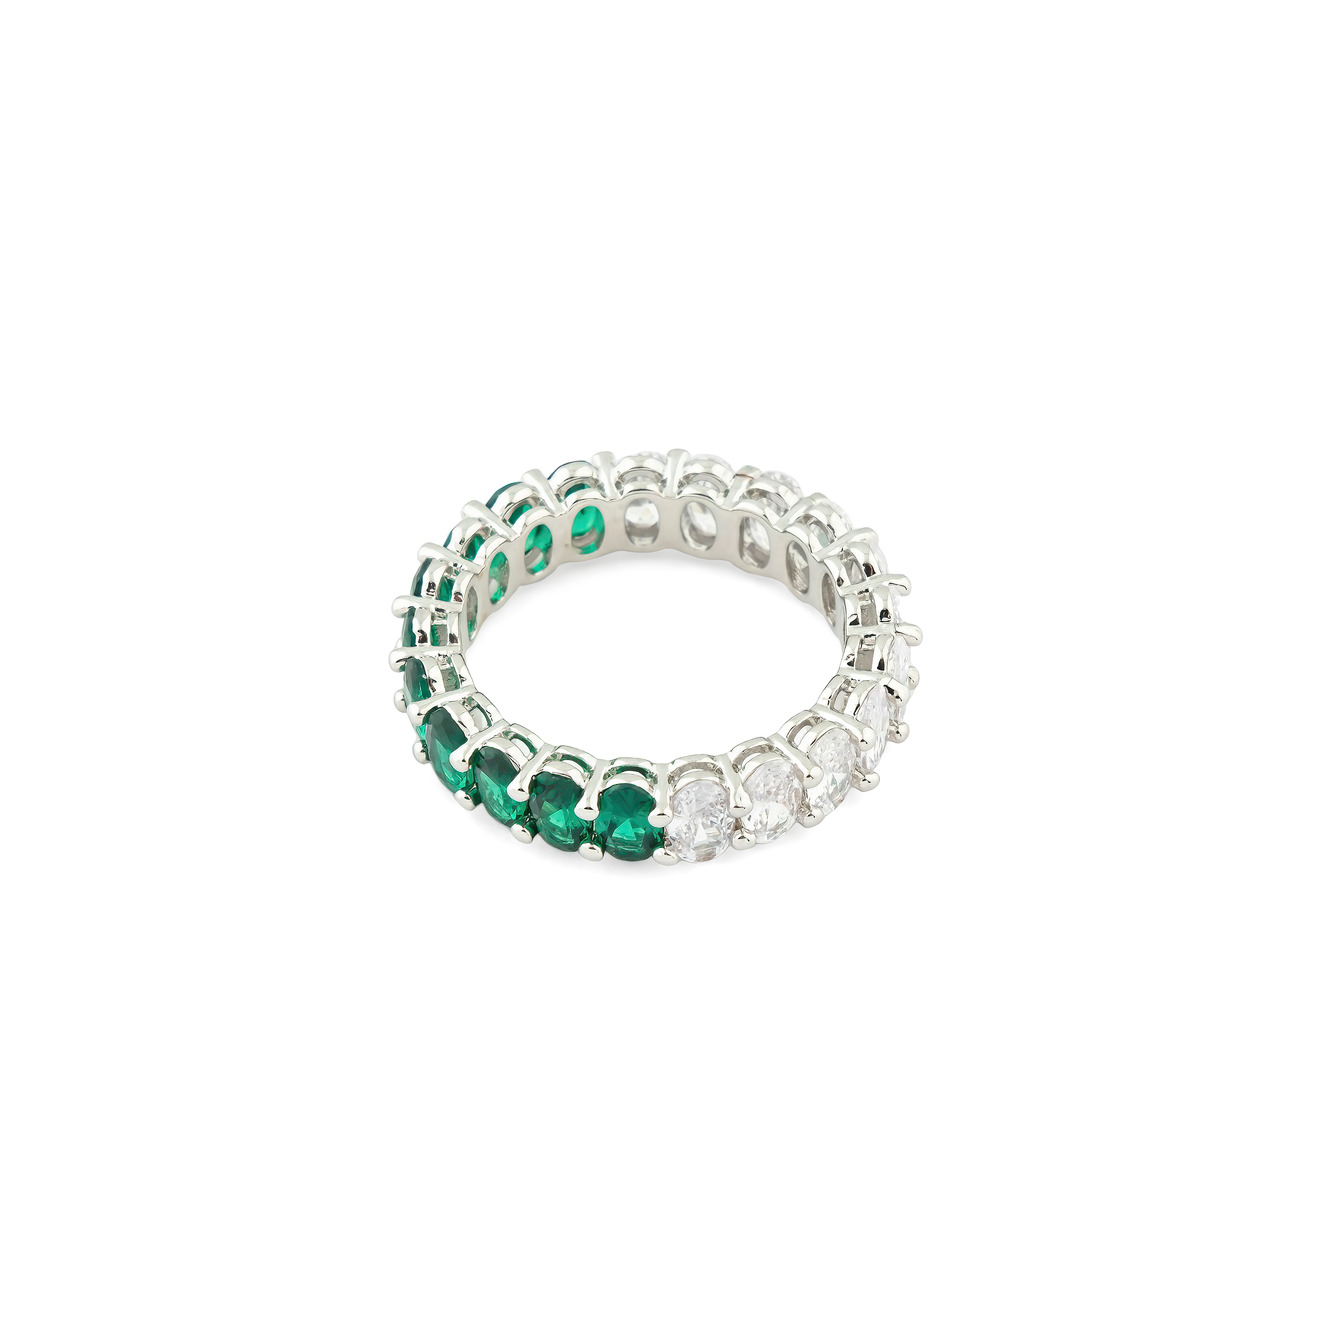 herald percy золотистое кольцо сердце с россыпью кристаллов Herald Percy Серебристое кольцо с овалами белых и зеленых кристаллов